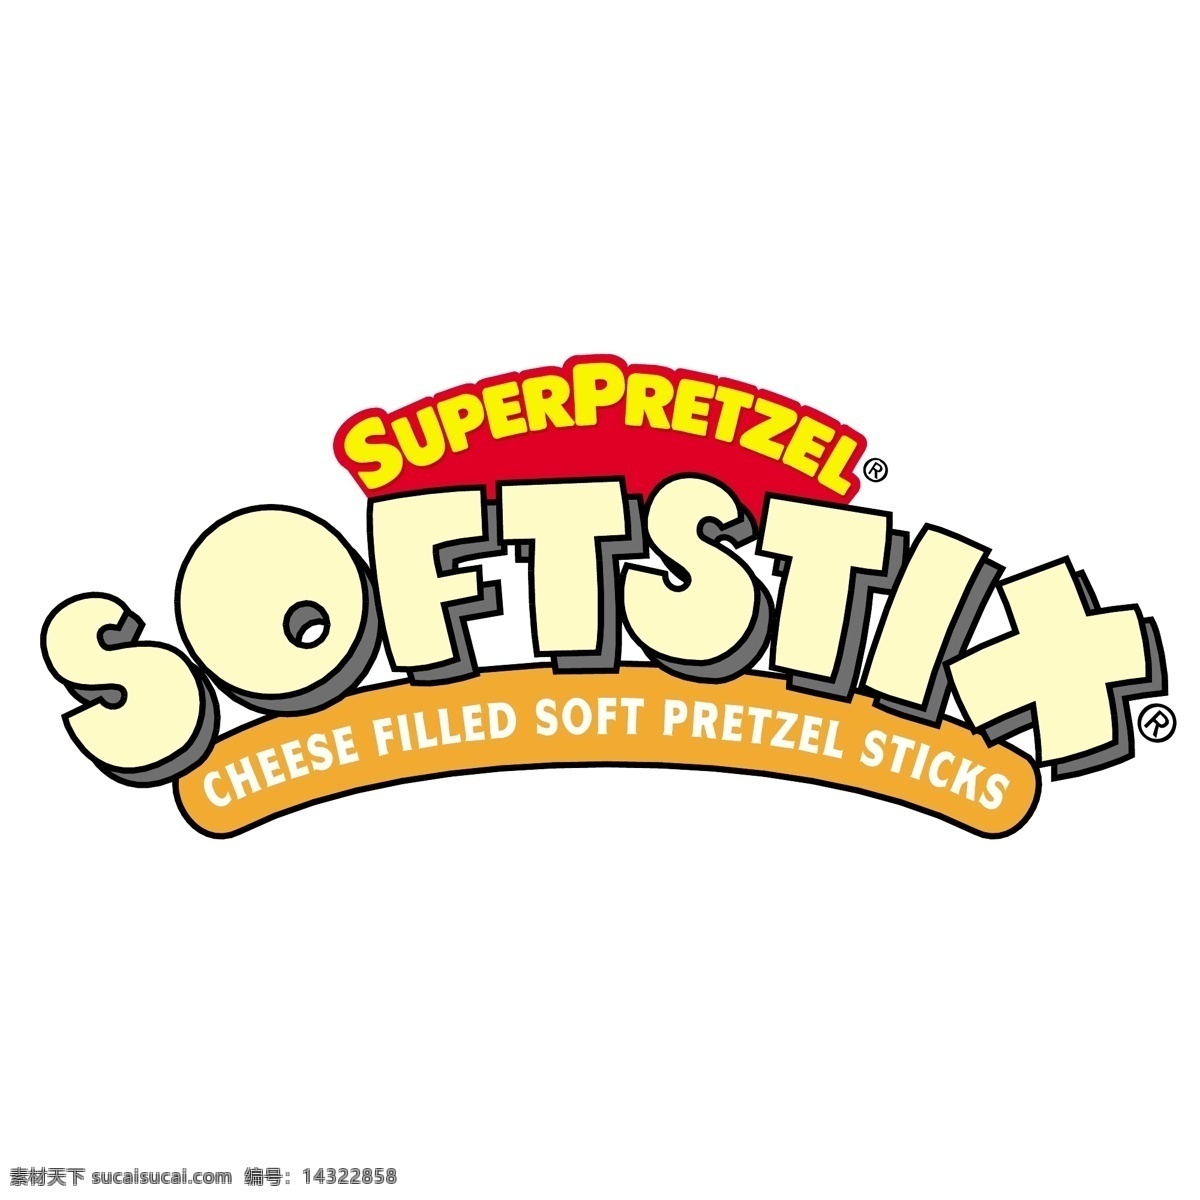 超 脆 饼干 softstix 矢量标志下载 免费矢量标识 商标 品牌标识 标识 矢量 免费 品牌 公司 白色